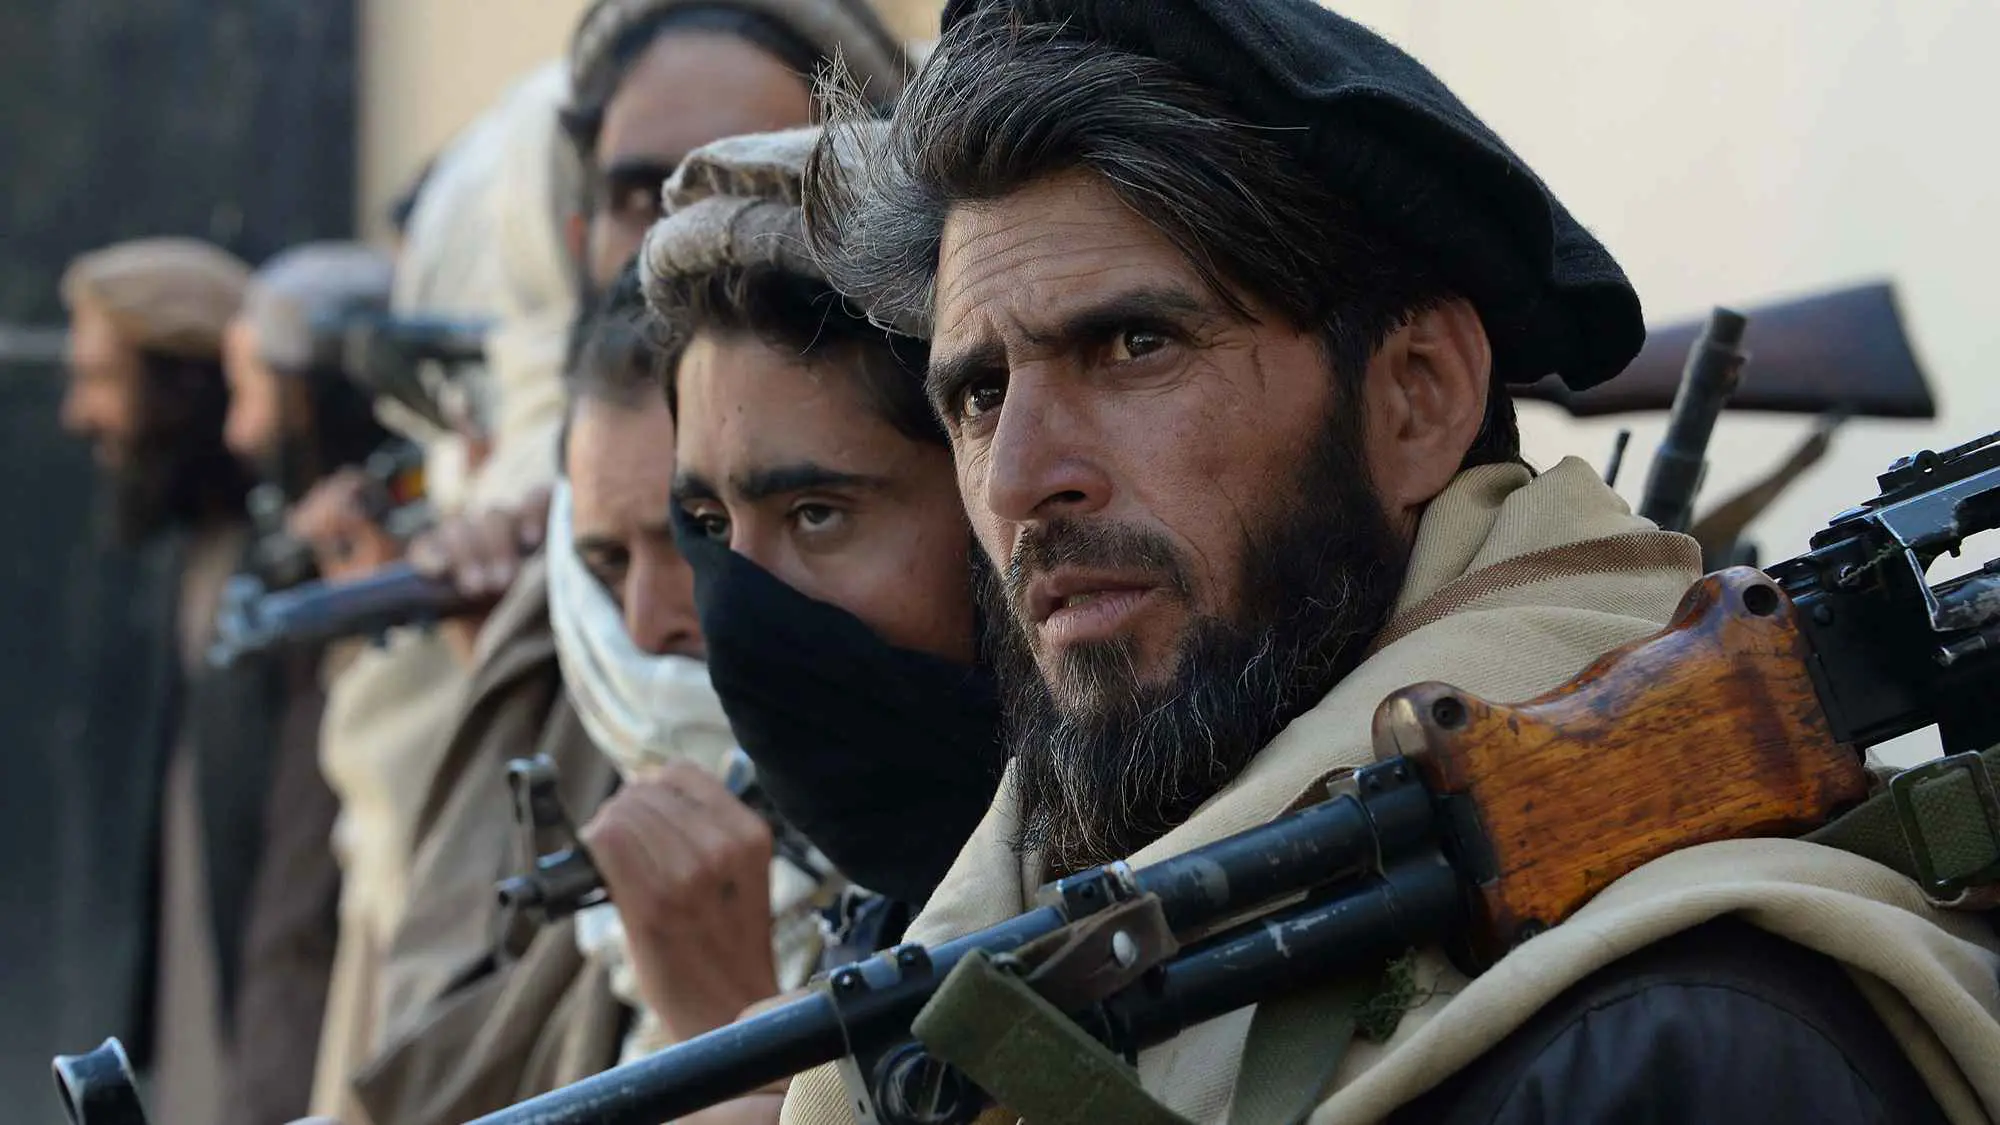 "تجاوز حدوده".. طالبان تطرد دبلوماسياً إيرانياً من أفغانستان